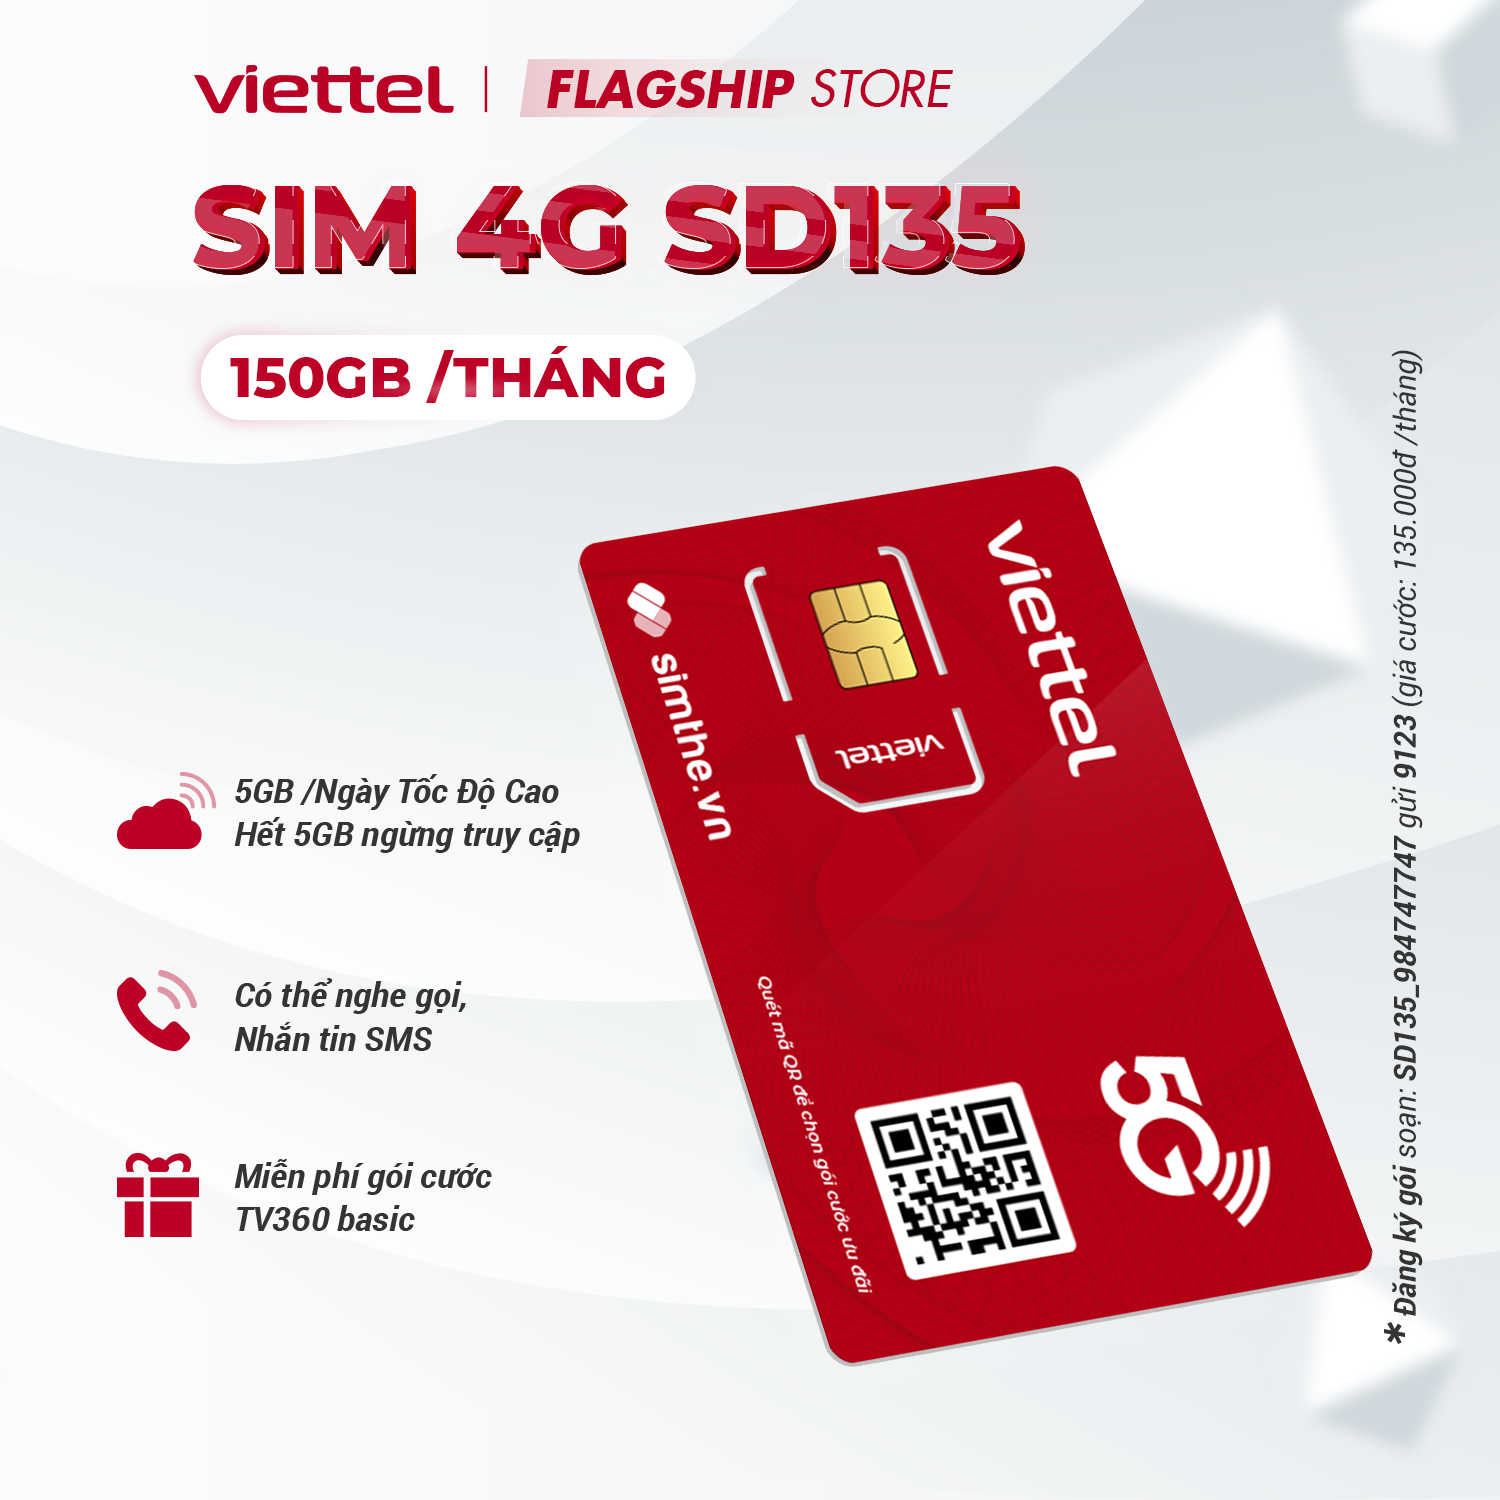 Sim 4G Viettel SD70 - SD90 - SD120 - SD135 Data 5GB/Ngày - 150GB/Tháng Tốc Độ Cao - MAX Băng Thông Chỉ Từ 70k/Tháng Dùng Toàn Quốc. Được Bán Tại SimTheVN - HÀNG CHÍNH HÃNG